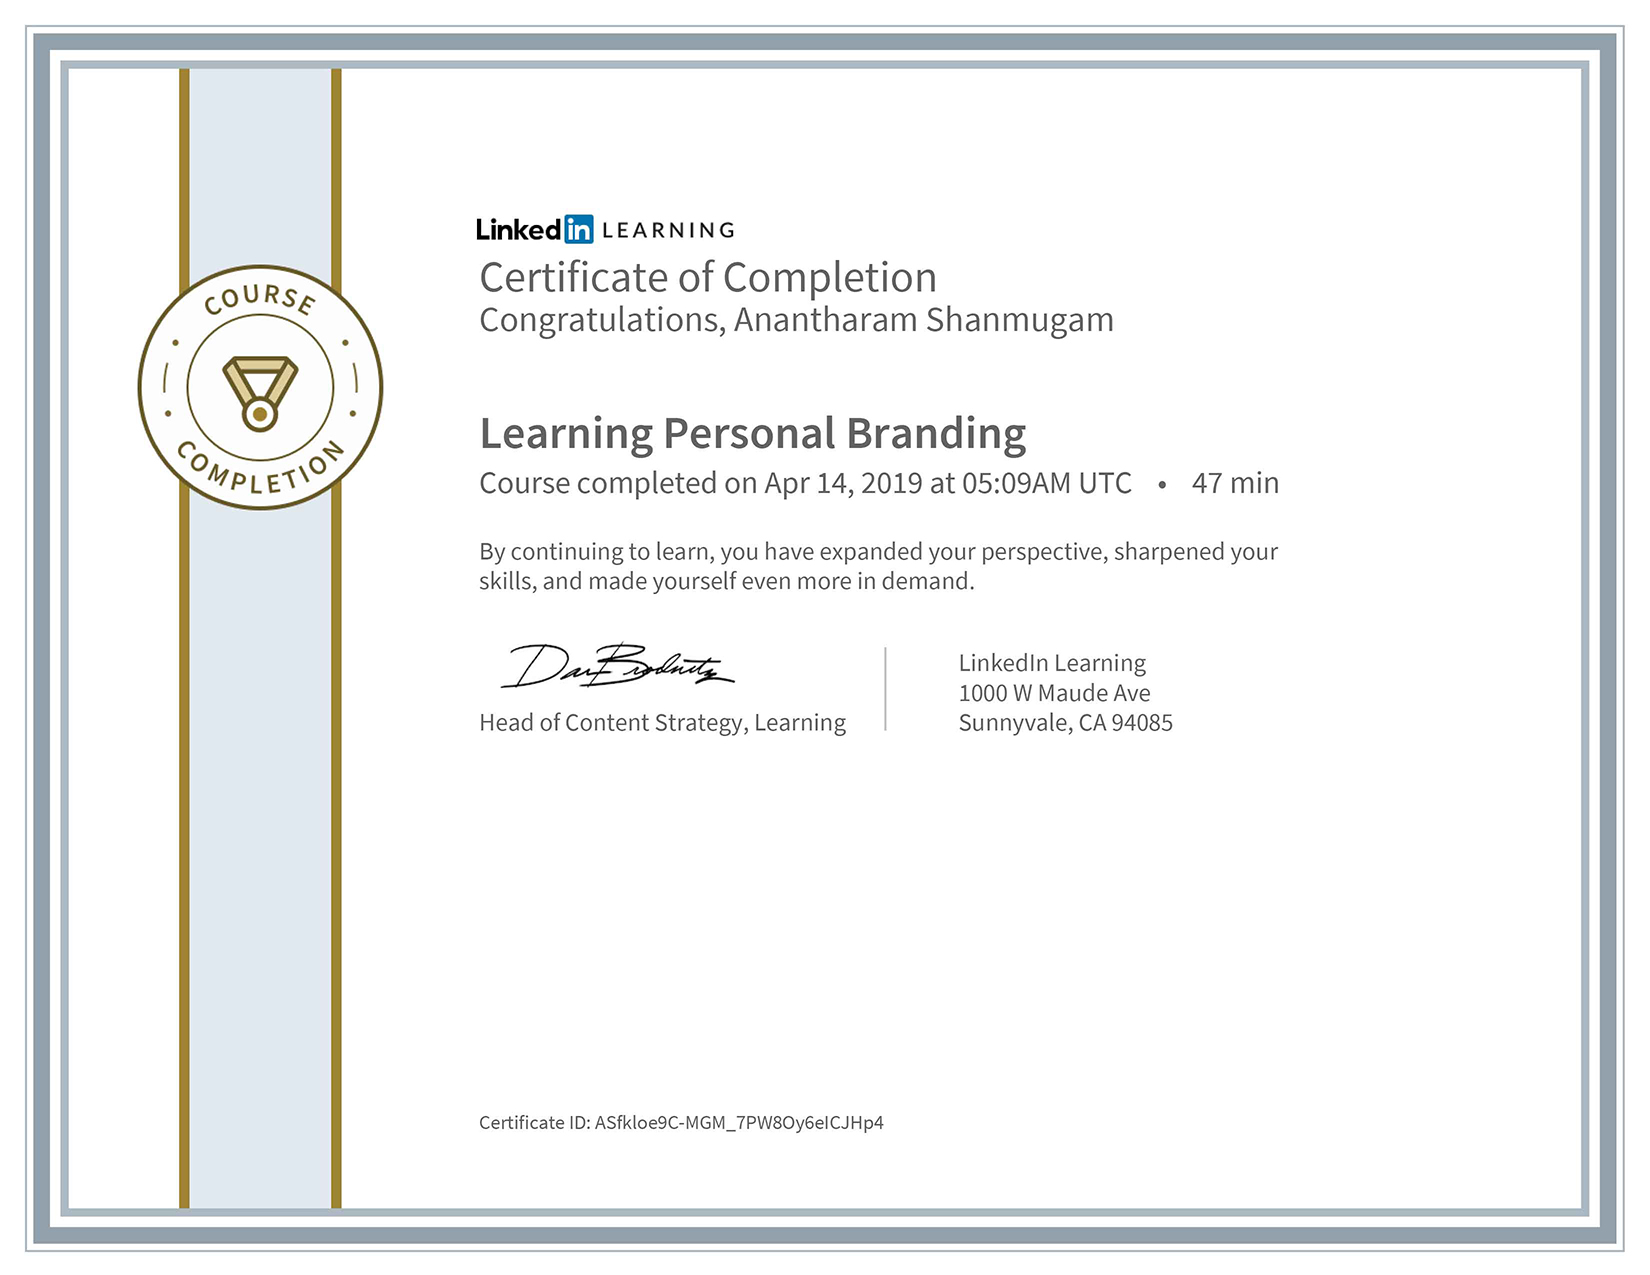 DigitalAnanth Personal Branding Certificate